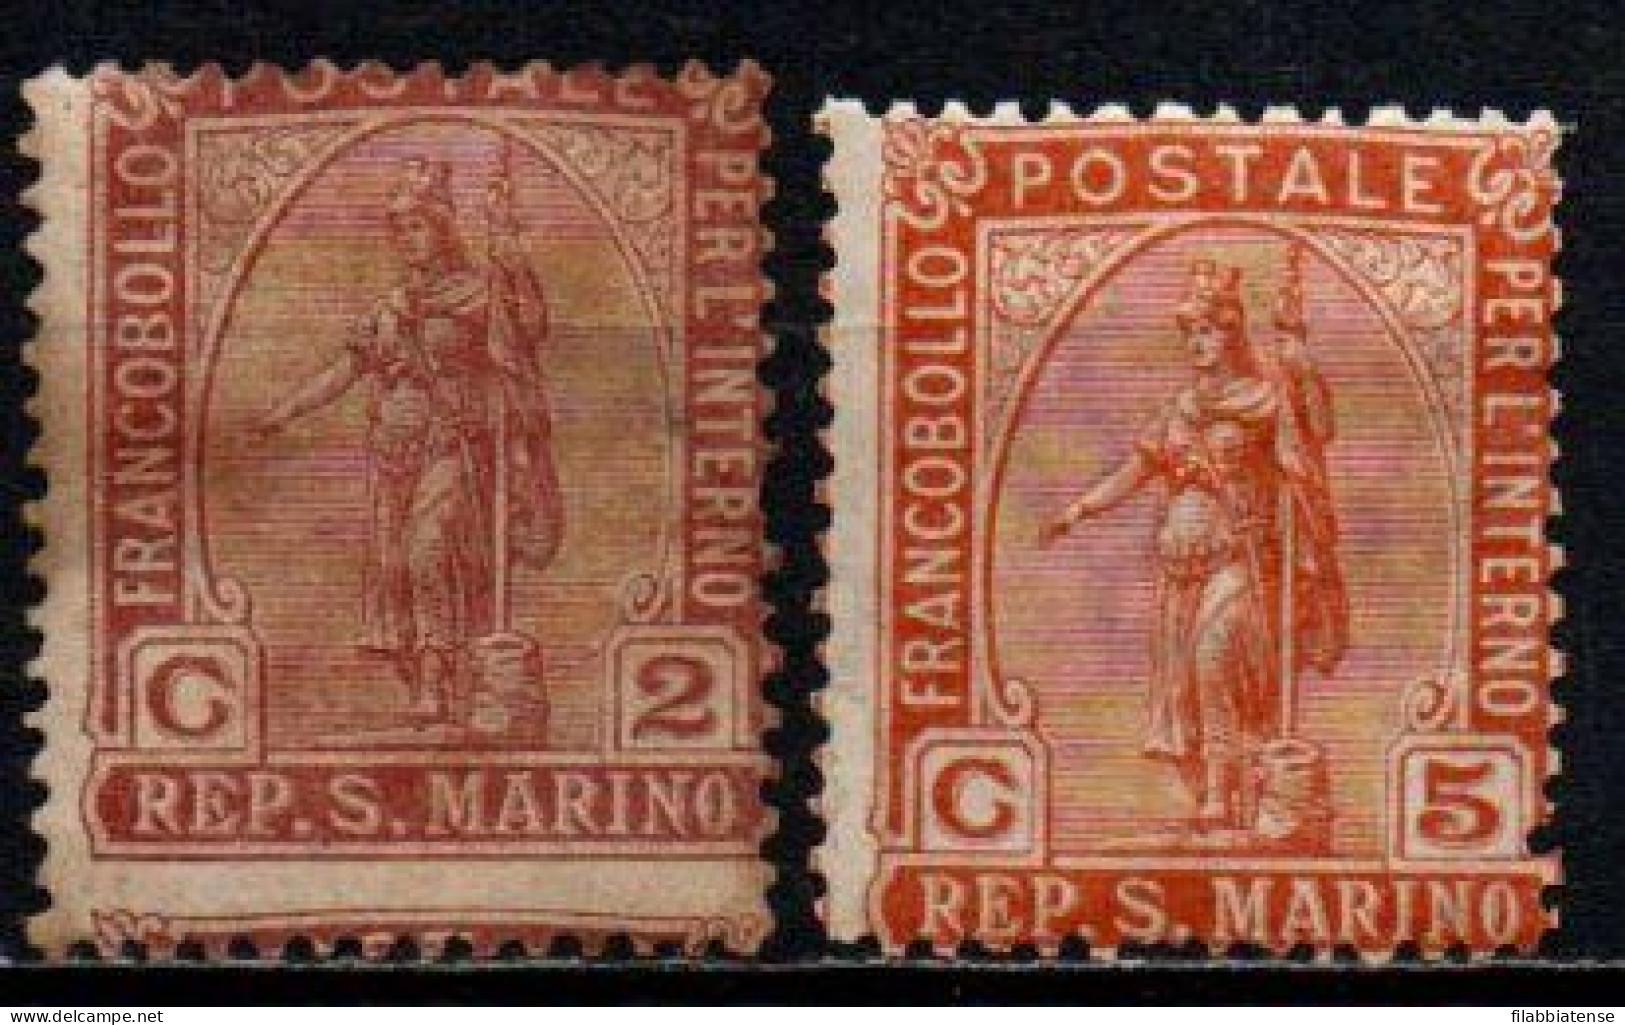 1899 - San Marino 32/33 Statua Della Libertà  ++++++ - Nuovi